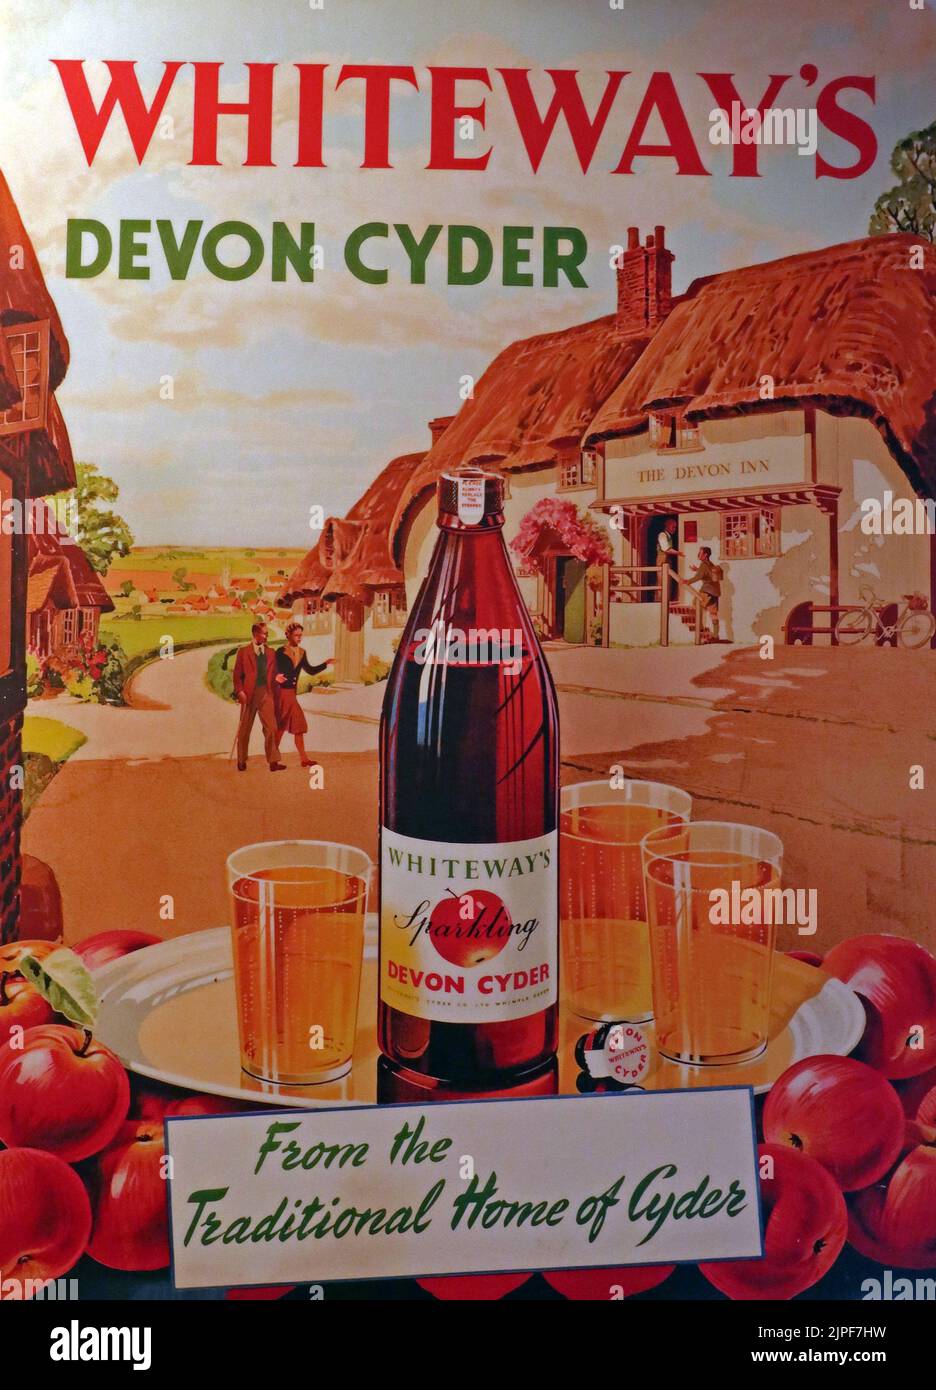 Publicité par affiche pour Whiteways Sparkling Devon Cyder « pas plus que des cidres ordinaires » - « de la maison traditionnelle de Cyder » Banque D'Images